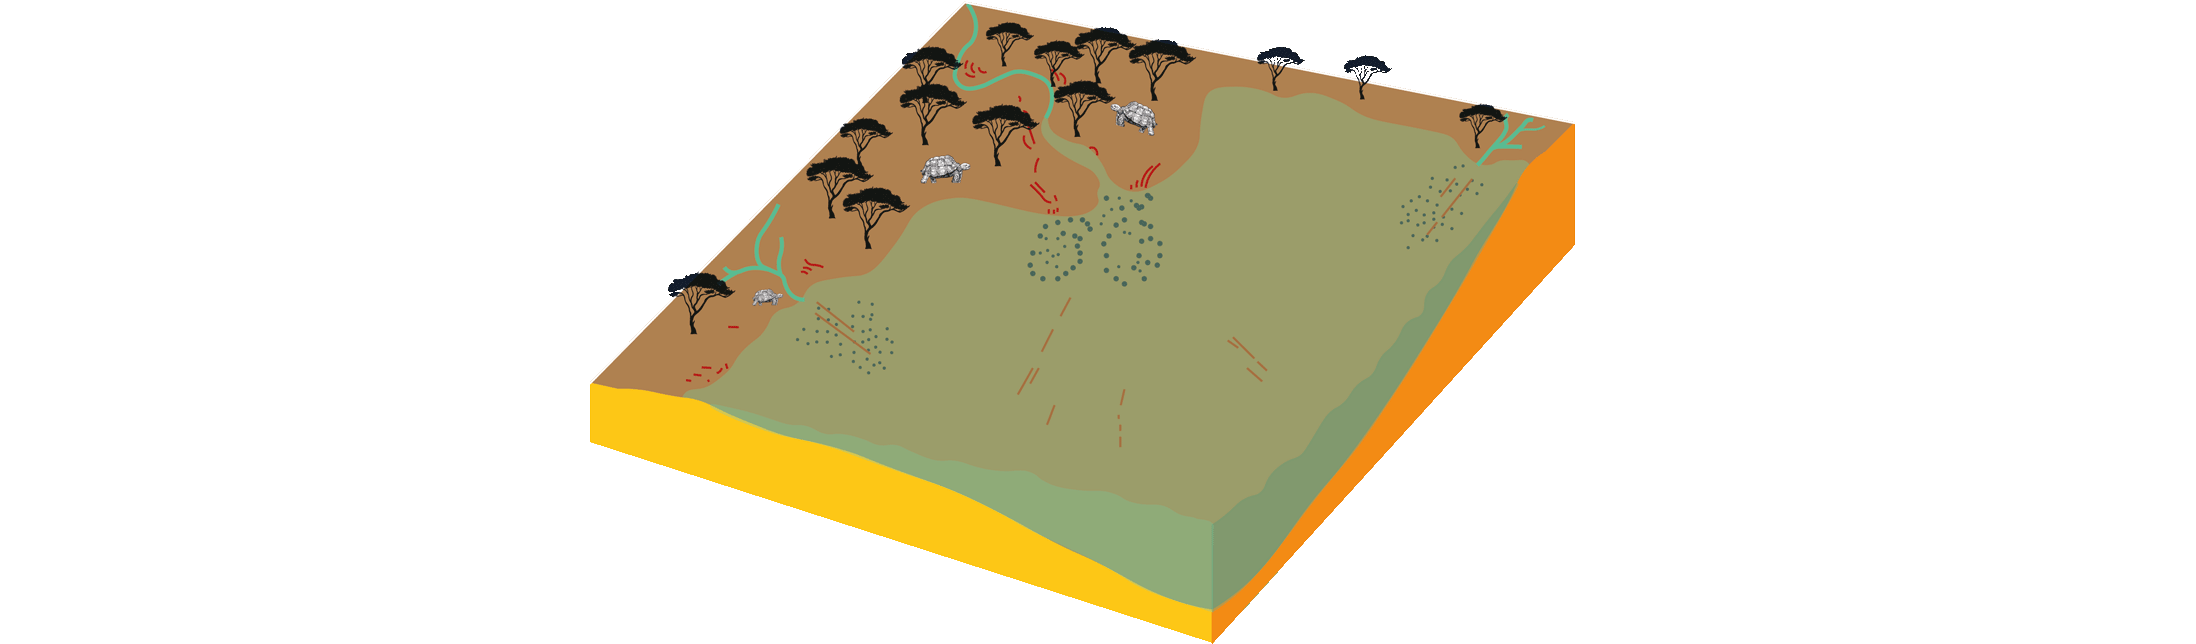 Dibujo esquemático del ambiente en la Cuenca cenozoica del Duero